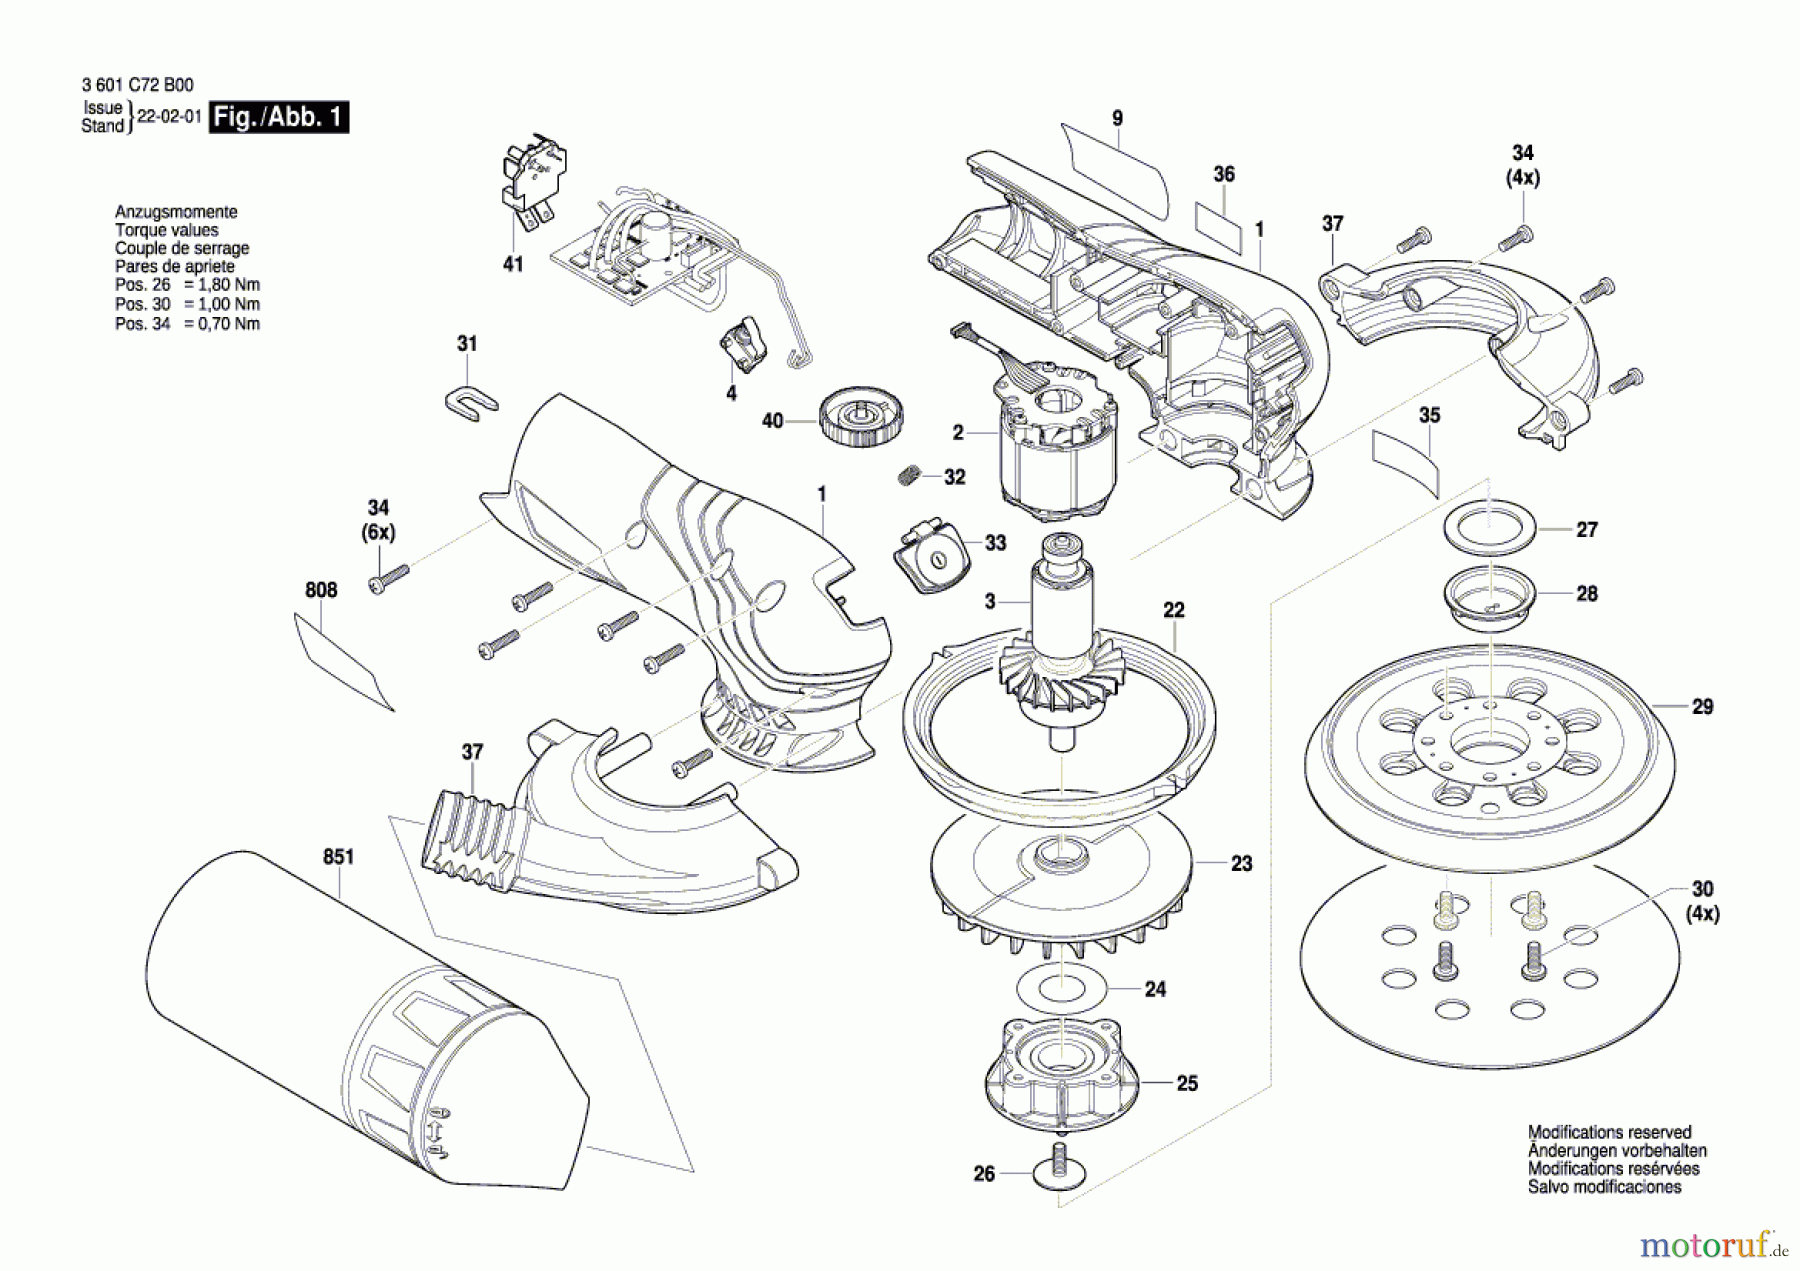  Bosch Werkzeug Exzenterschleifer A-EX BL 12V Seite 1